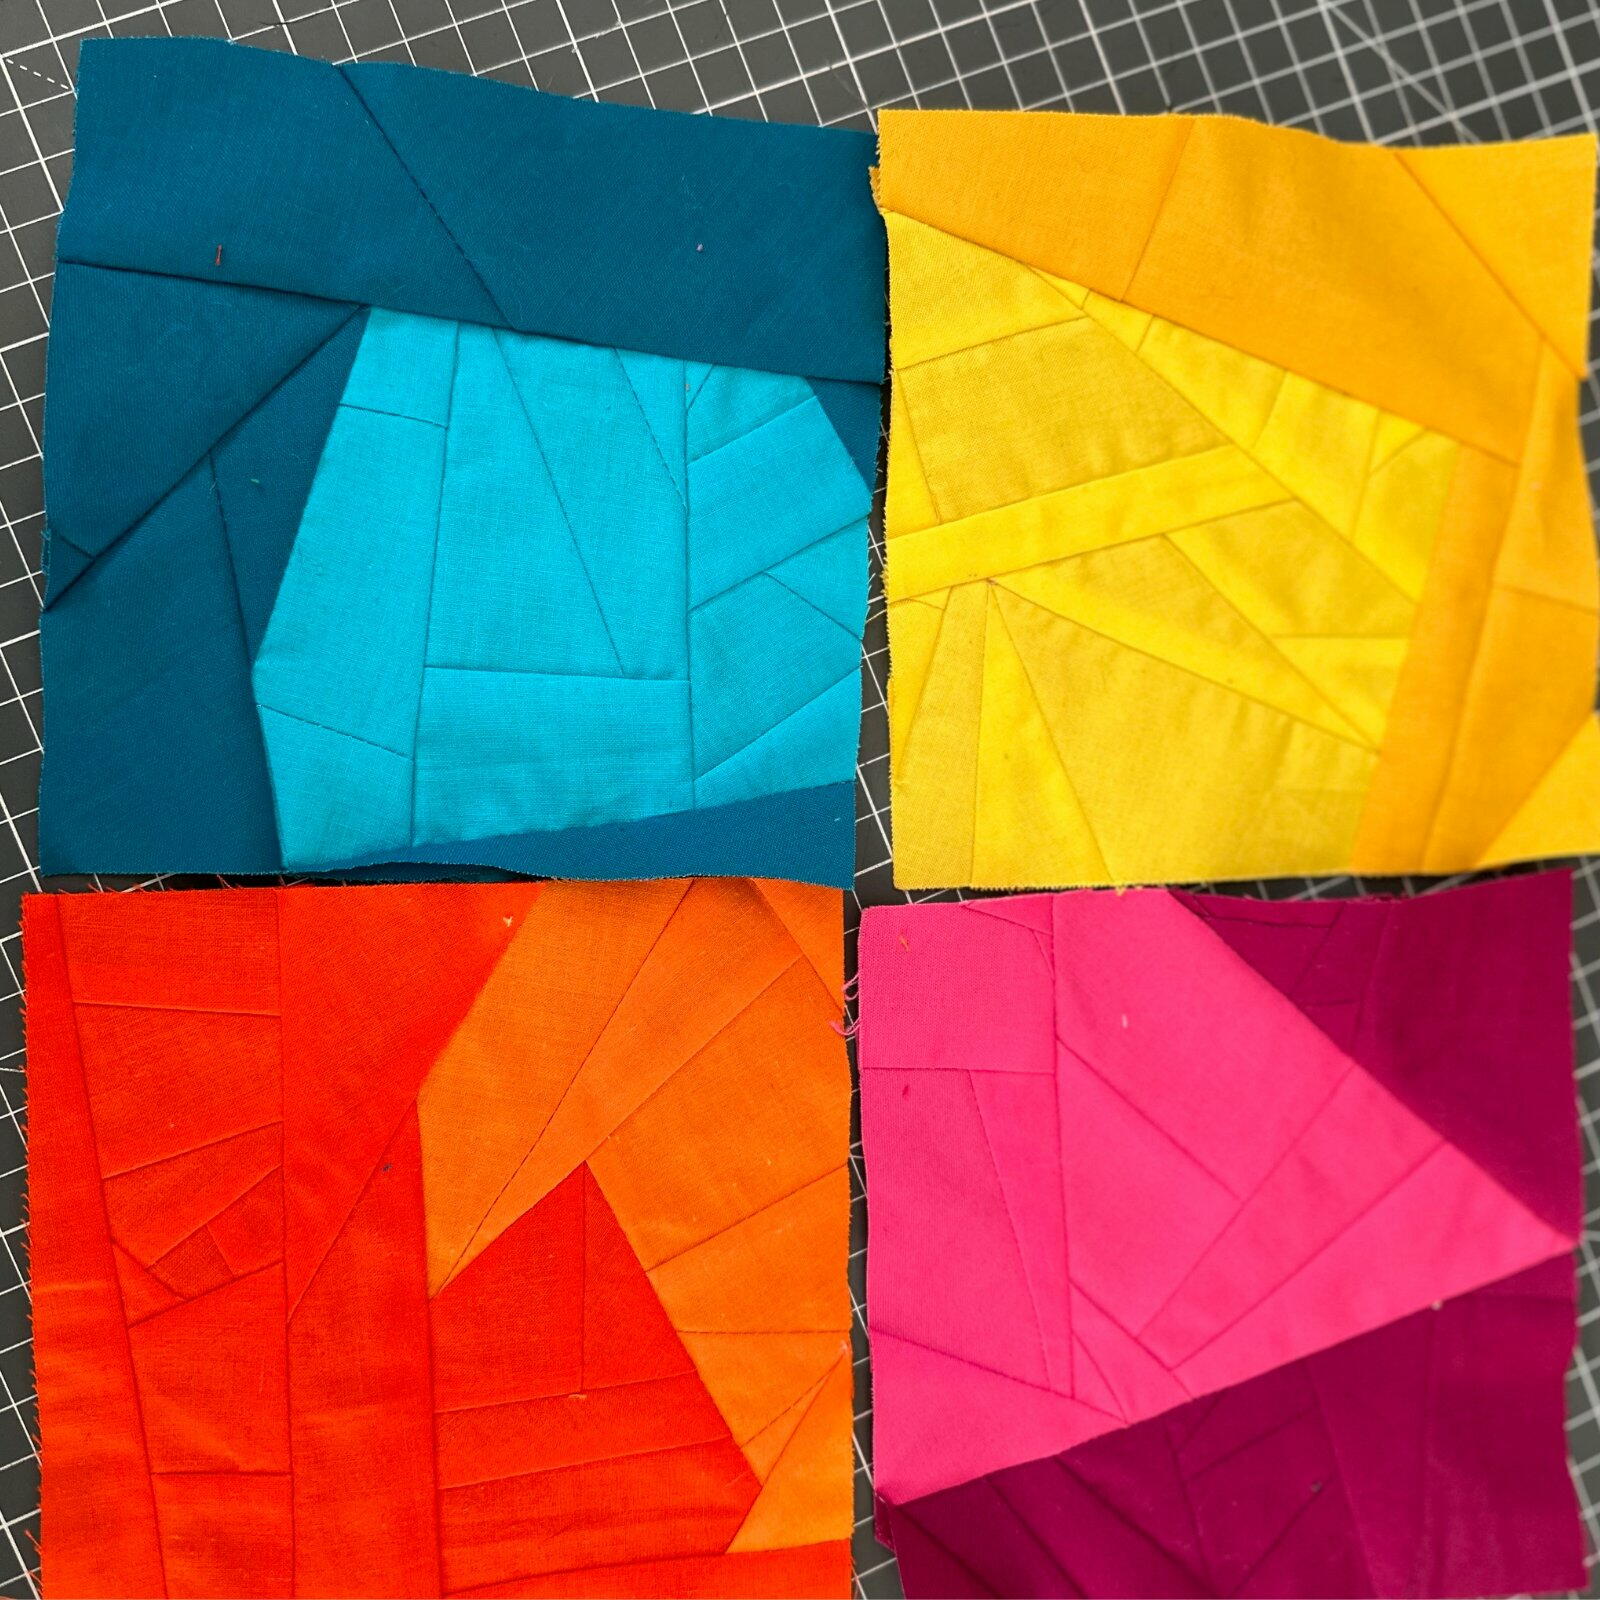 Solid Fabric Crumb Quilt Blocks | FaveQuilts.com